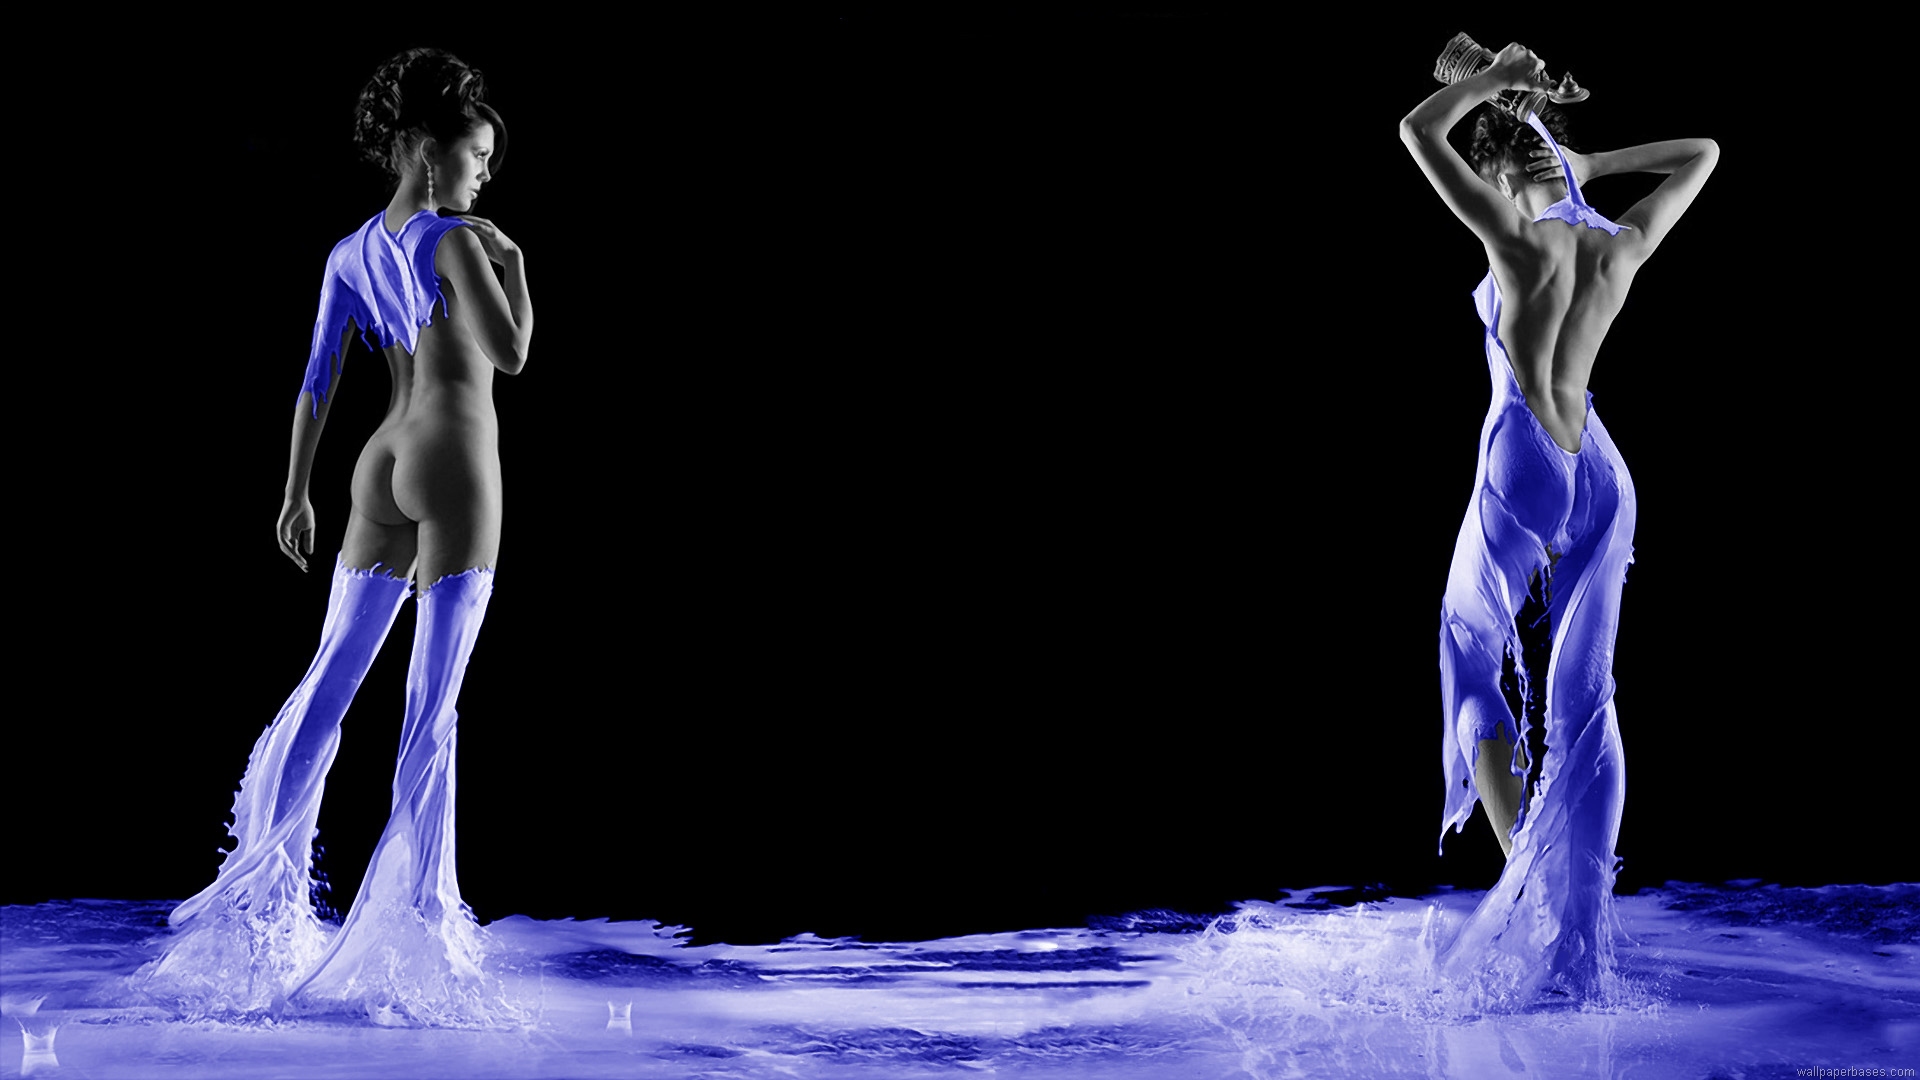 sfondi hd 1080 x 1920 pixel,acqua,ballerino,danza moderna,prestazione,umano